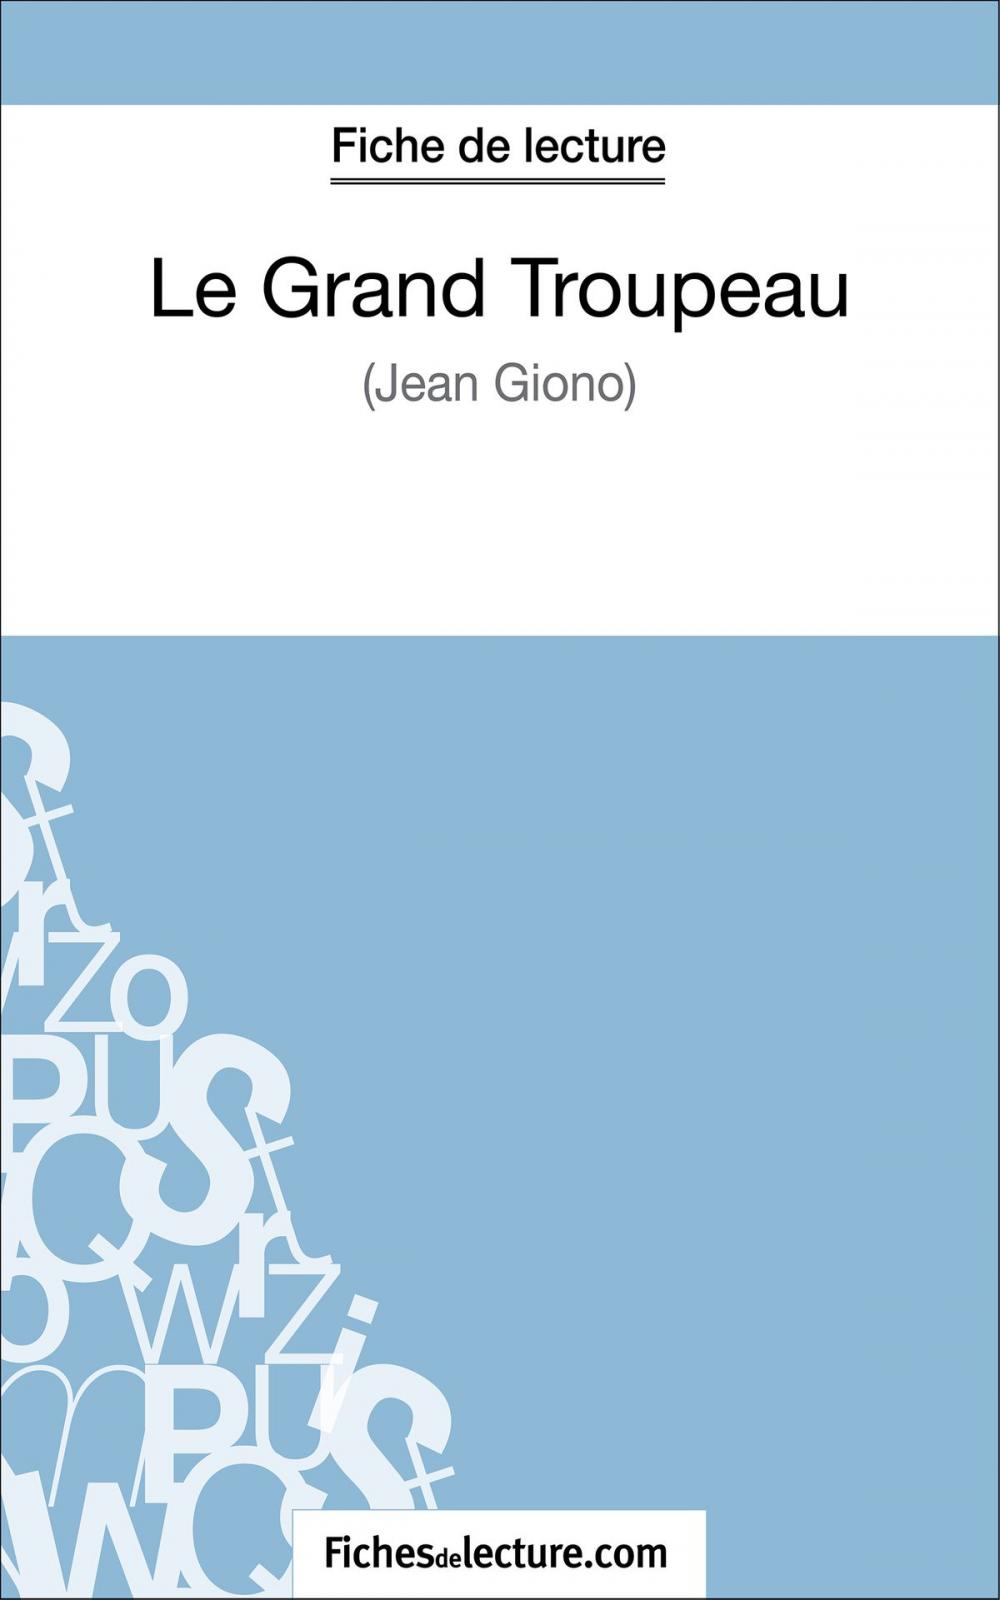 Big bigCover of Le Grand Troupeau de Jean Giono (Fiche de lecture)